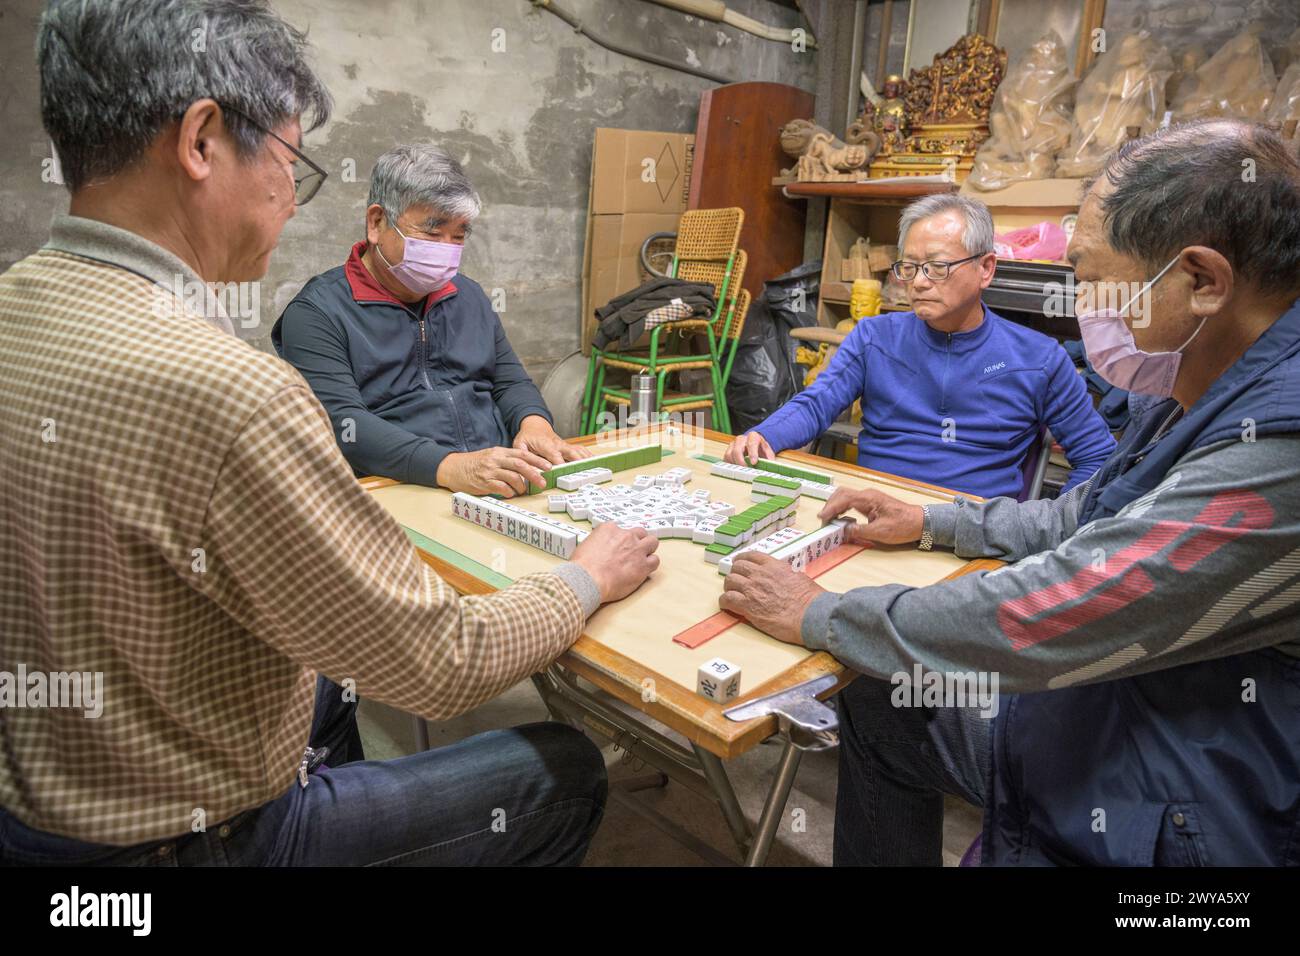 Gruppo di uomini impegnati in una partita di mahjong in un ambiente informale Foto Stock